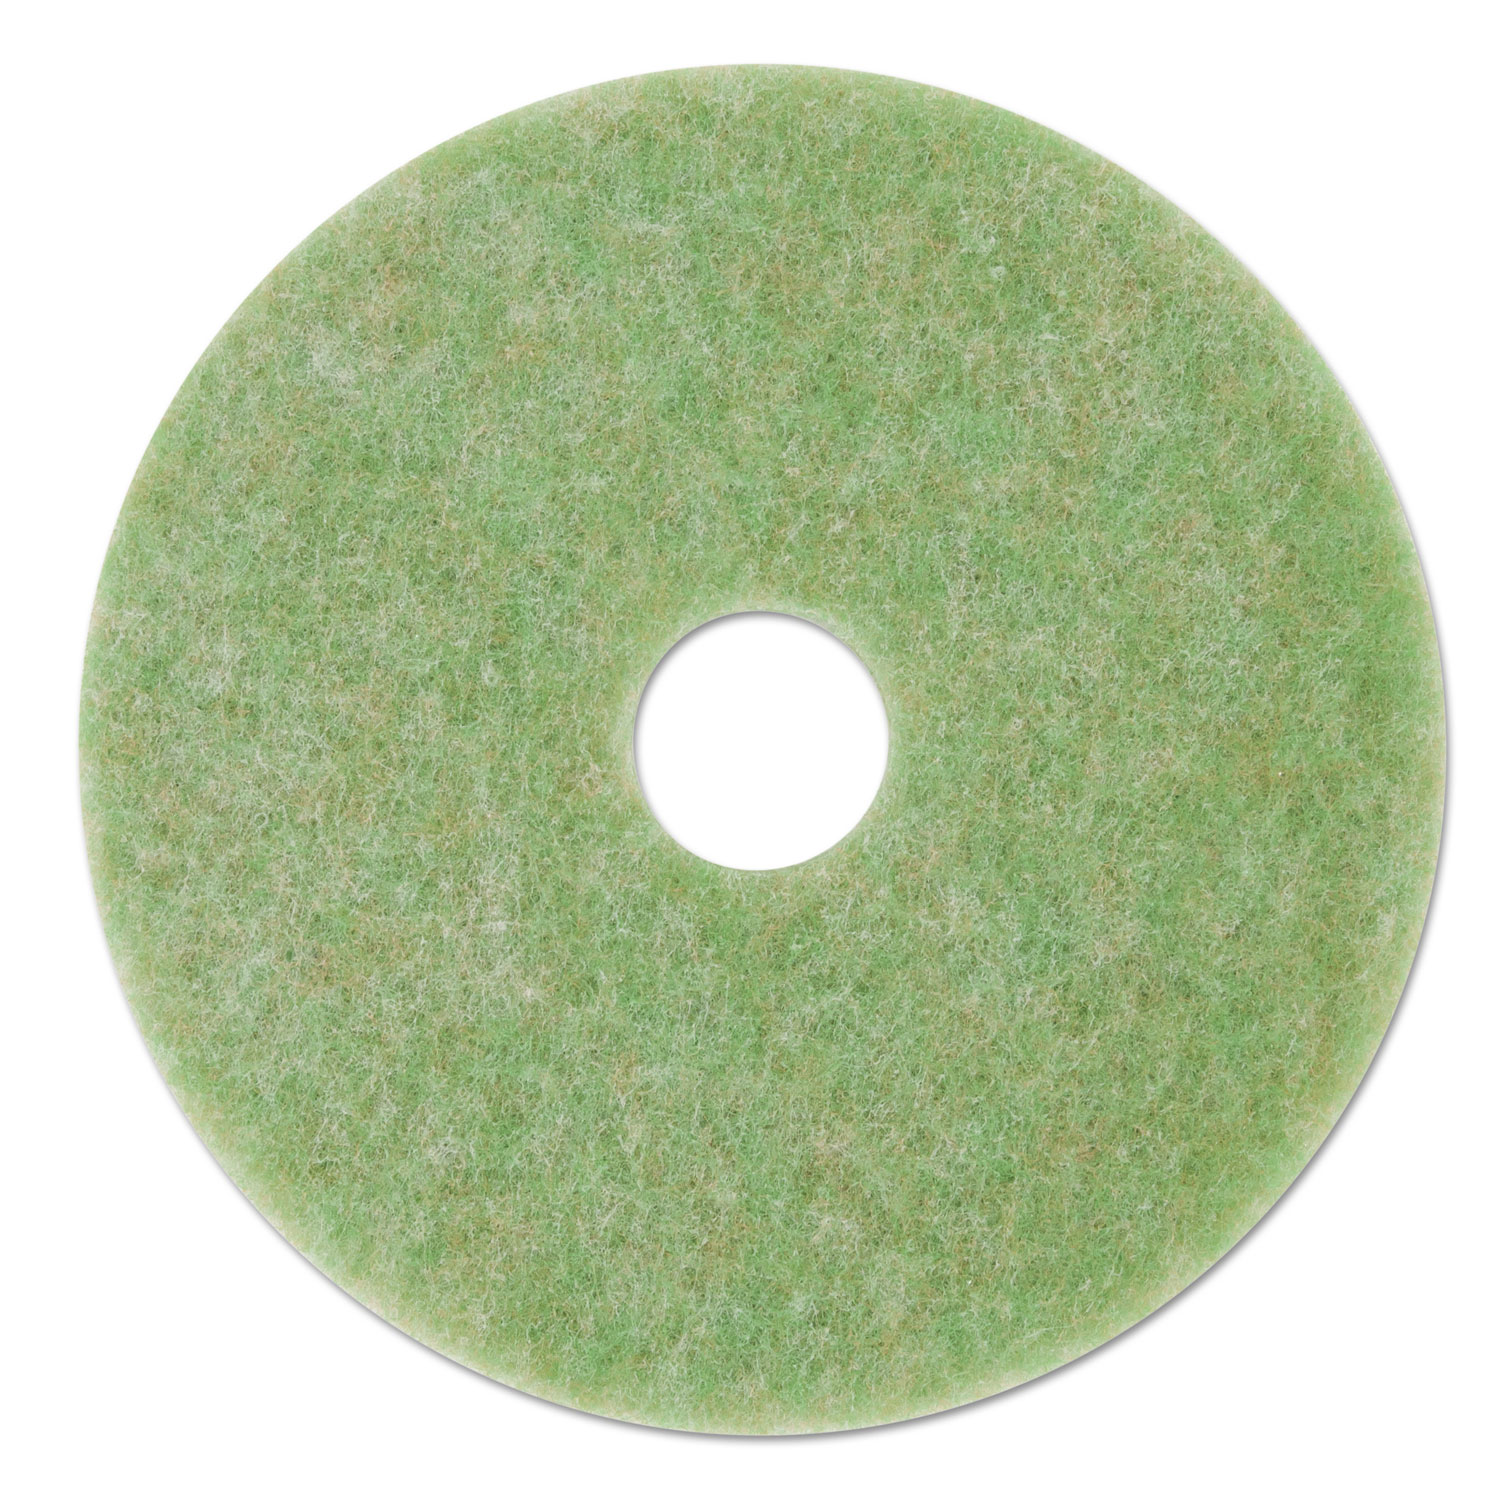 Low-Speed TopLine Autoscrubber Floor Pads 5000, 12 Diameter, Green/Amber, 5/CT